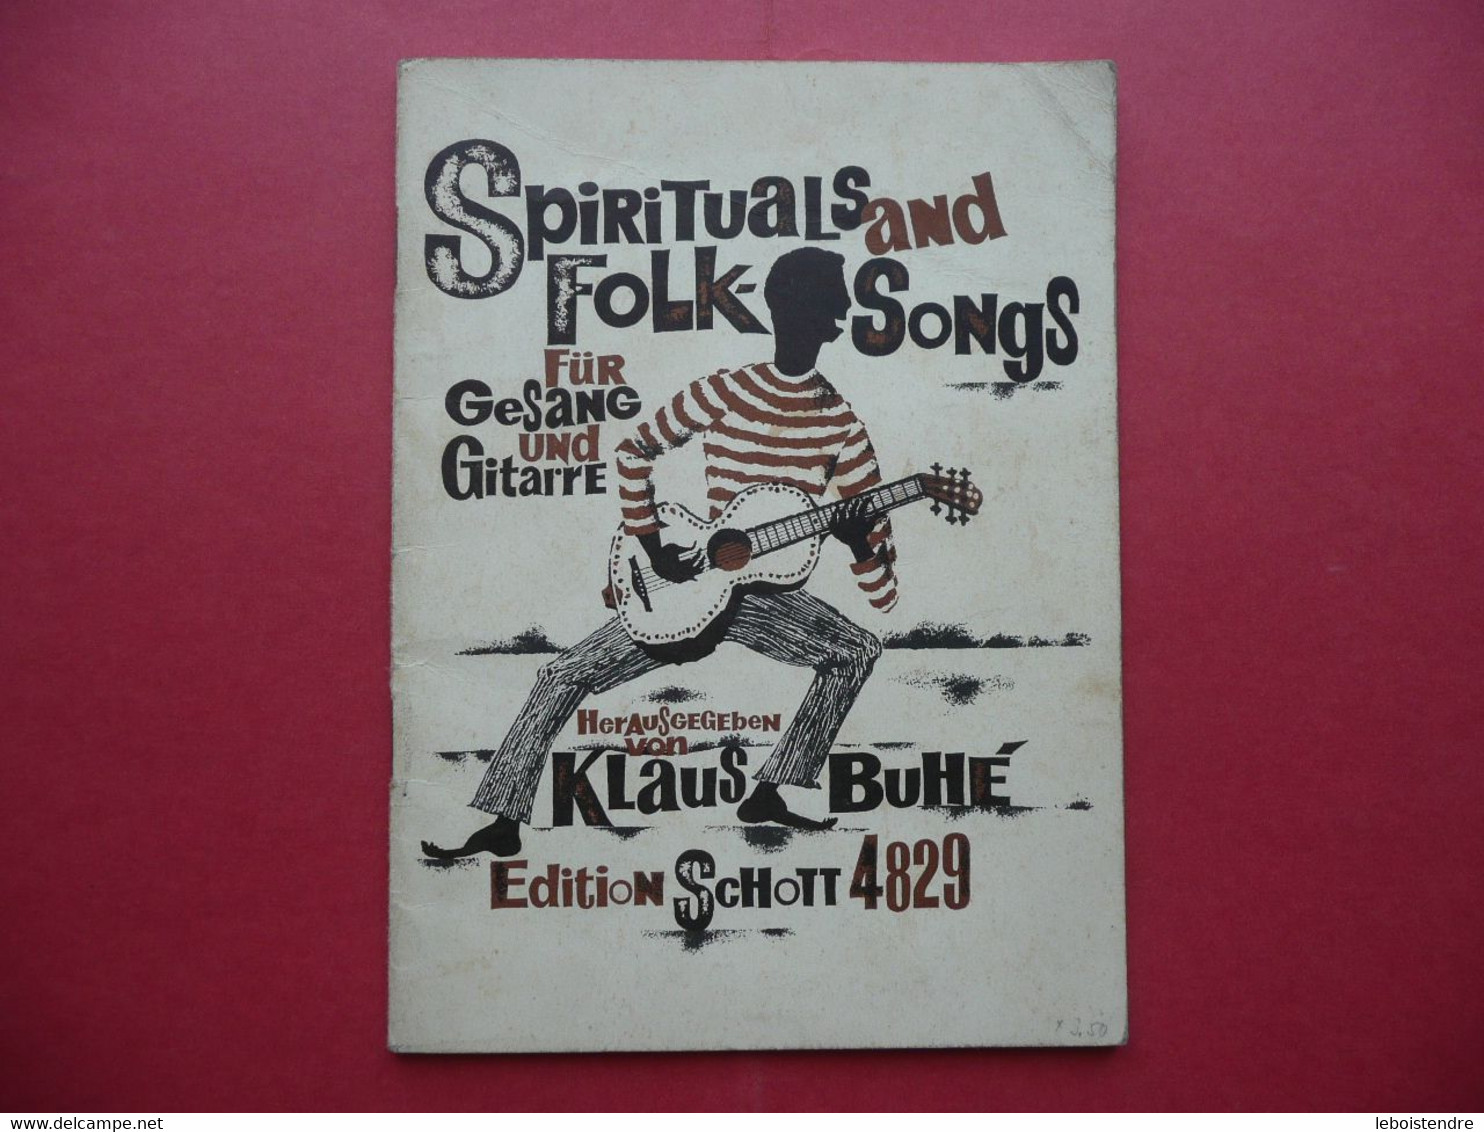 SPIRITUALS AND FOLK SONGS FUR GESANG UND GUITARRE HERAUSGEGEBEN VON KLAUS BUHE EDITION SCHOTT 4829 PARTITIONS - Musique